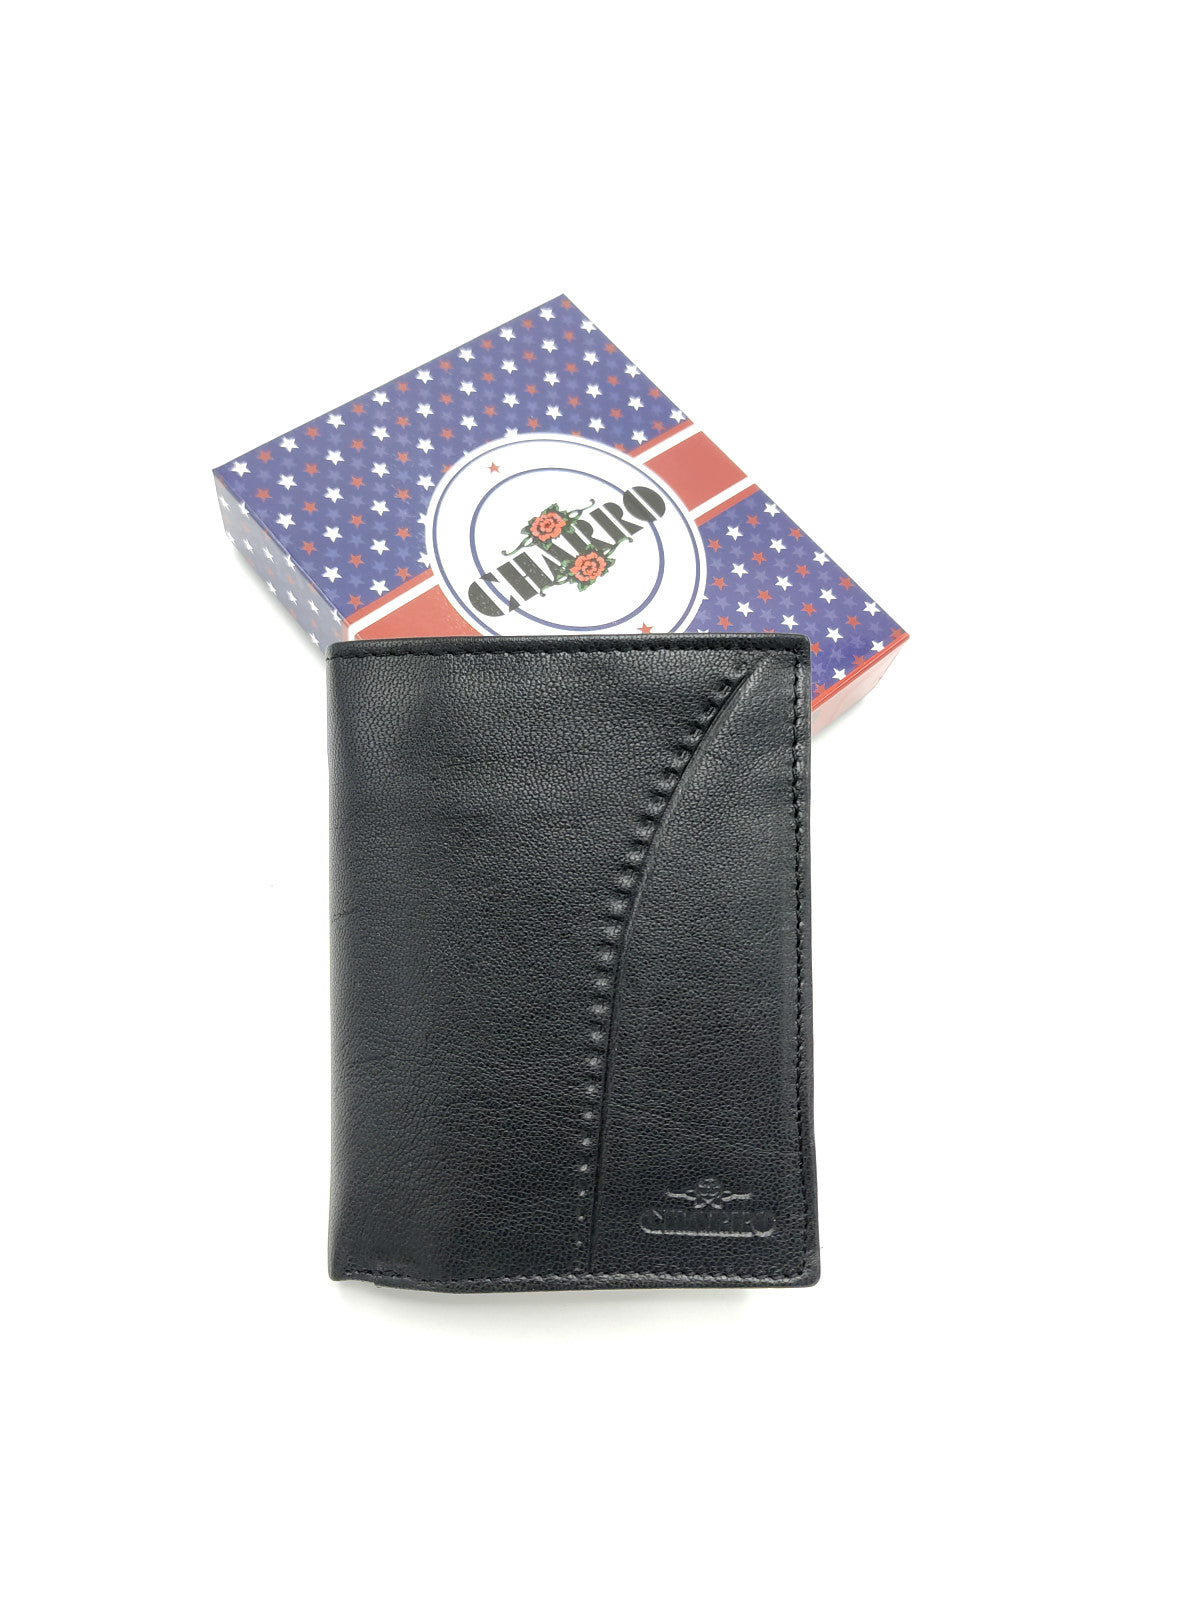 Genuine leather wallet for men, Brand Charro, art. ISPI1379.422